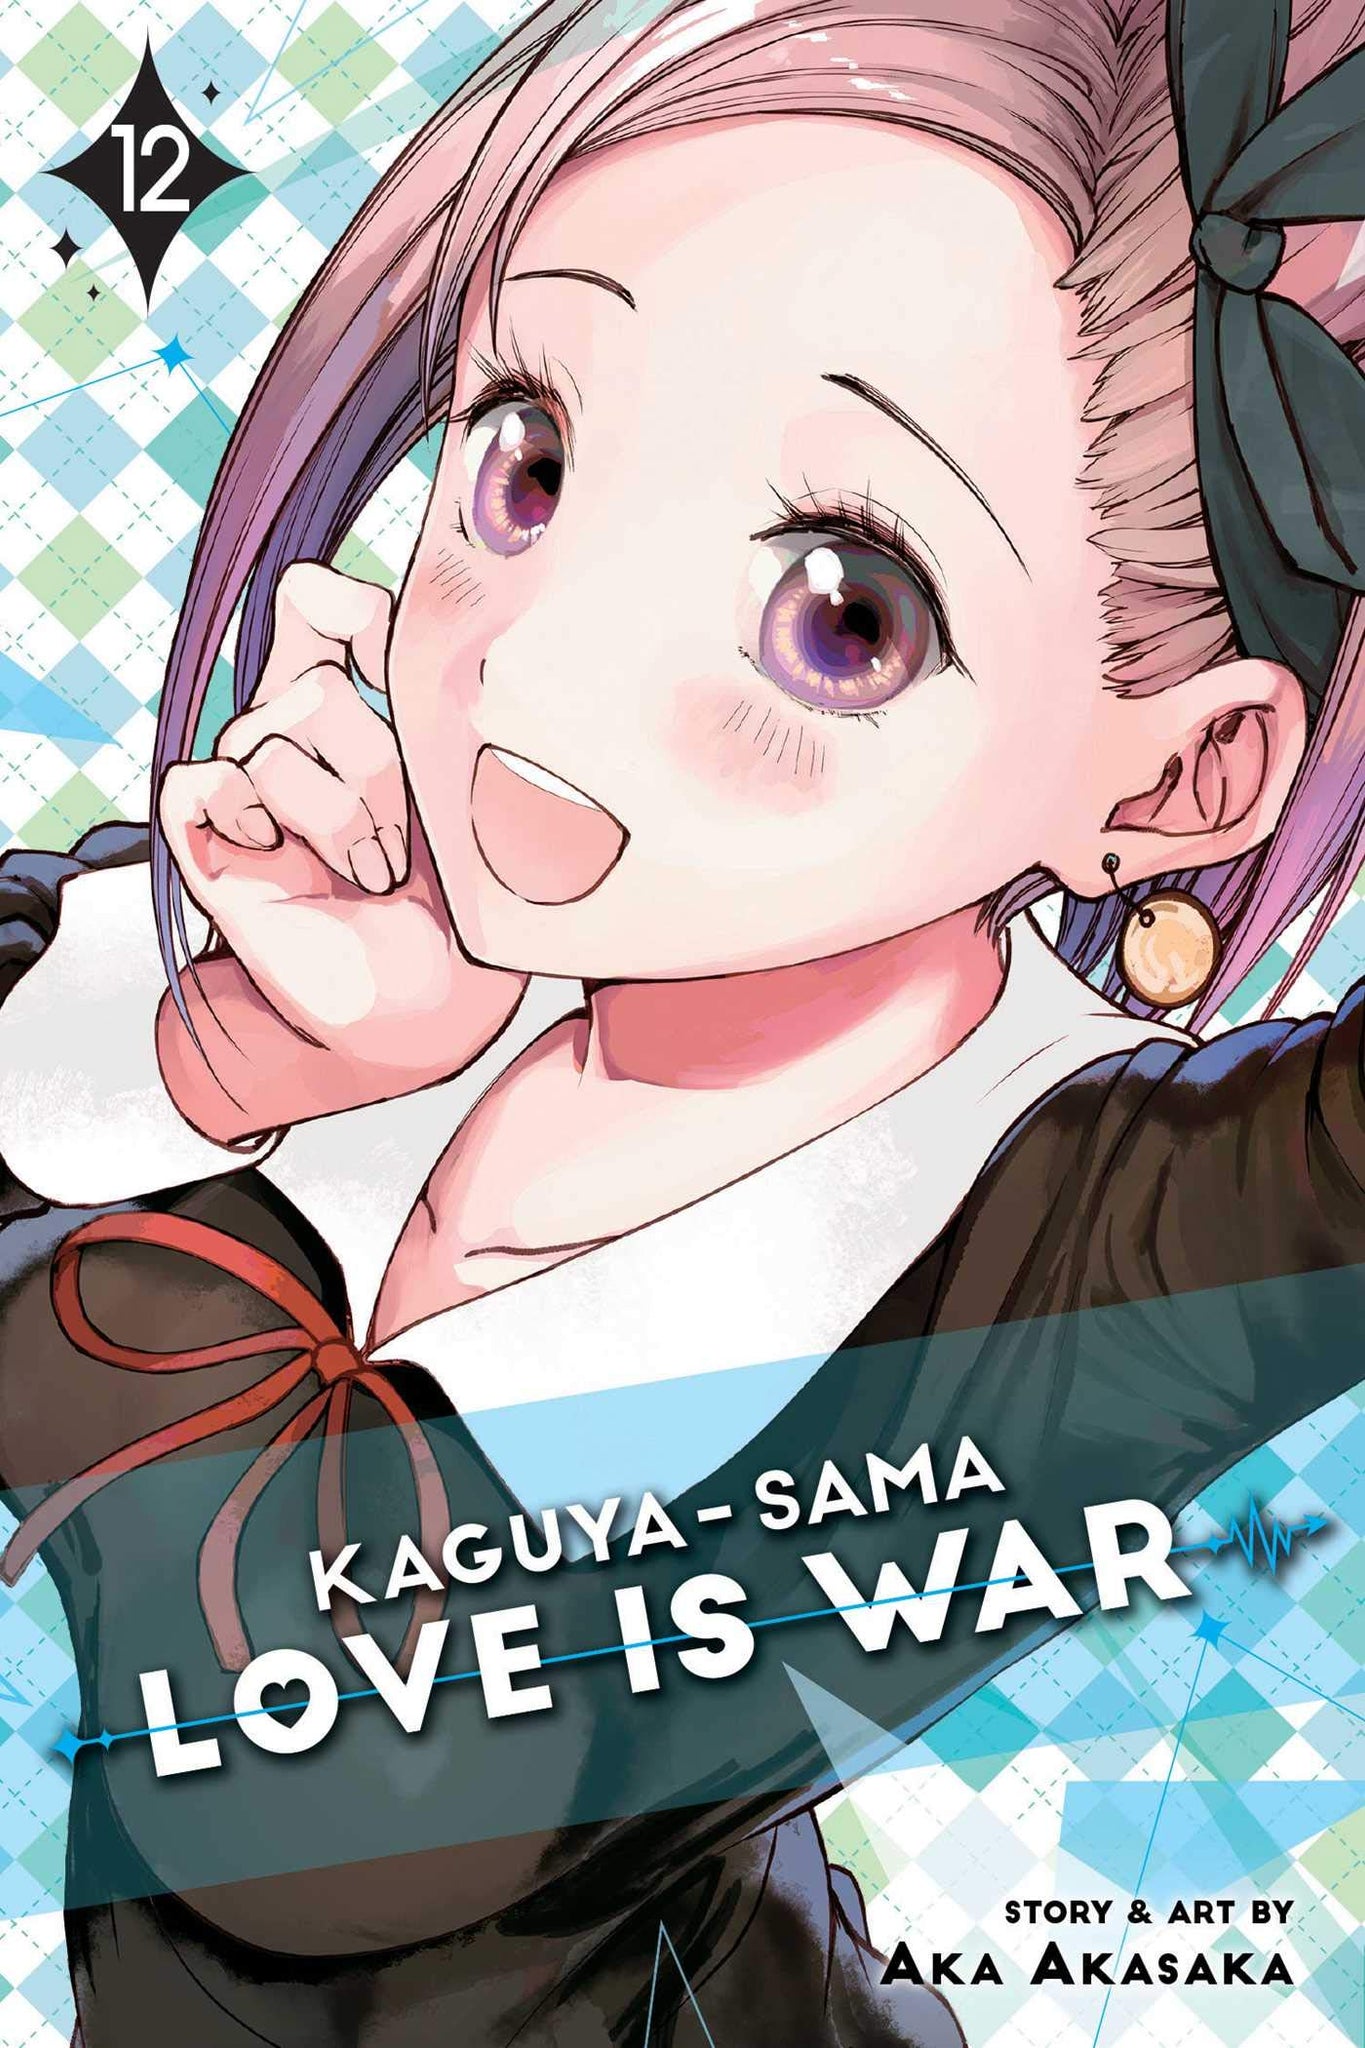 Kaguya-sama : Love Is War #12 - Paperback